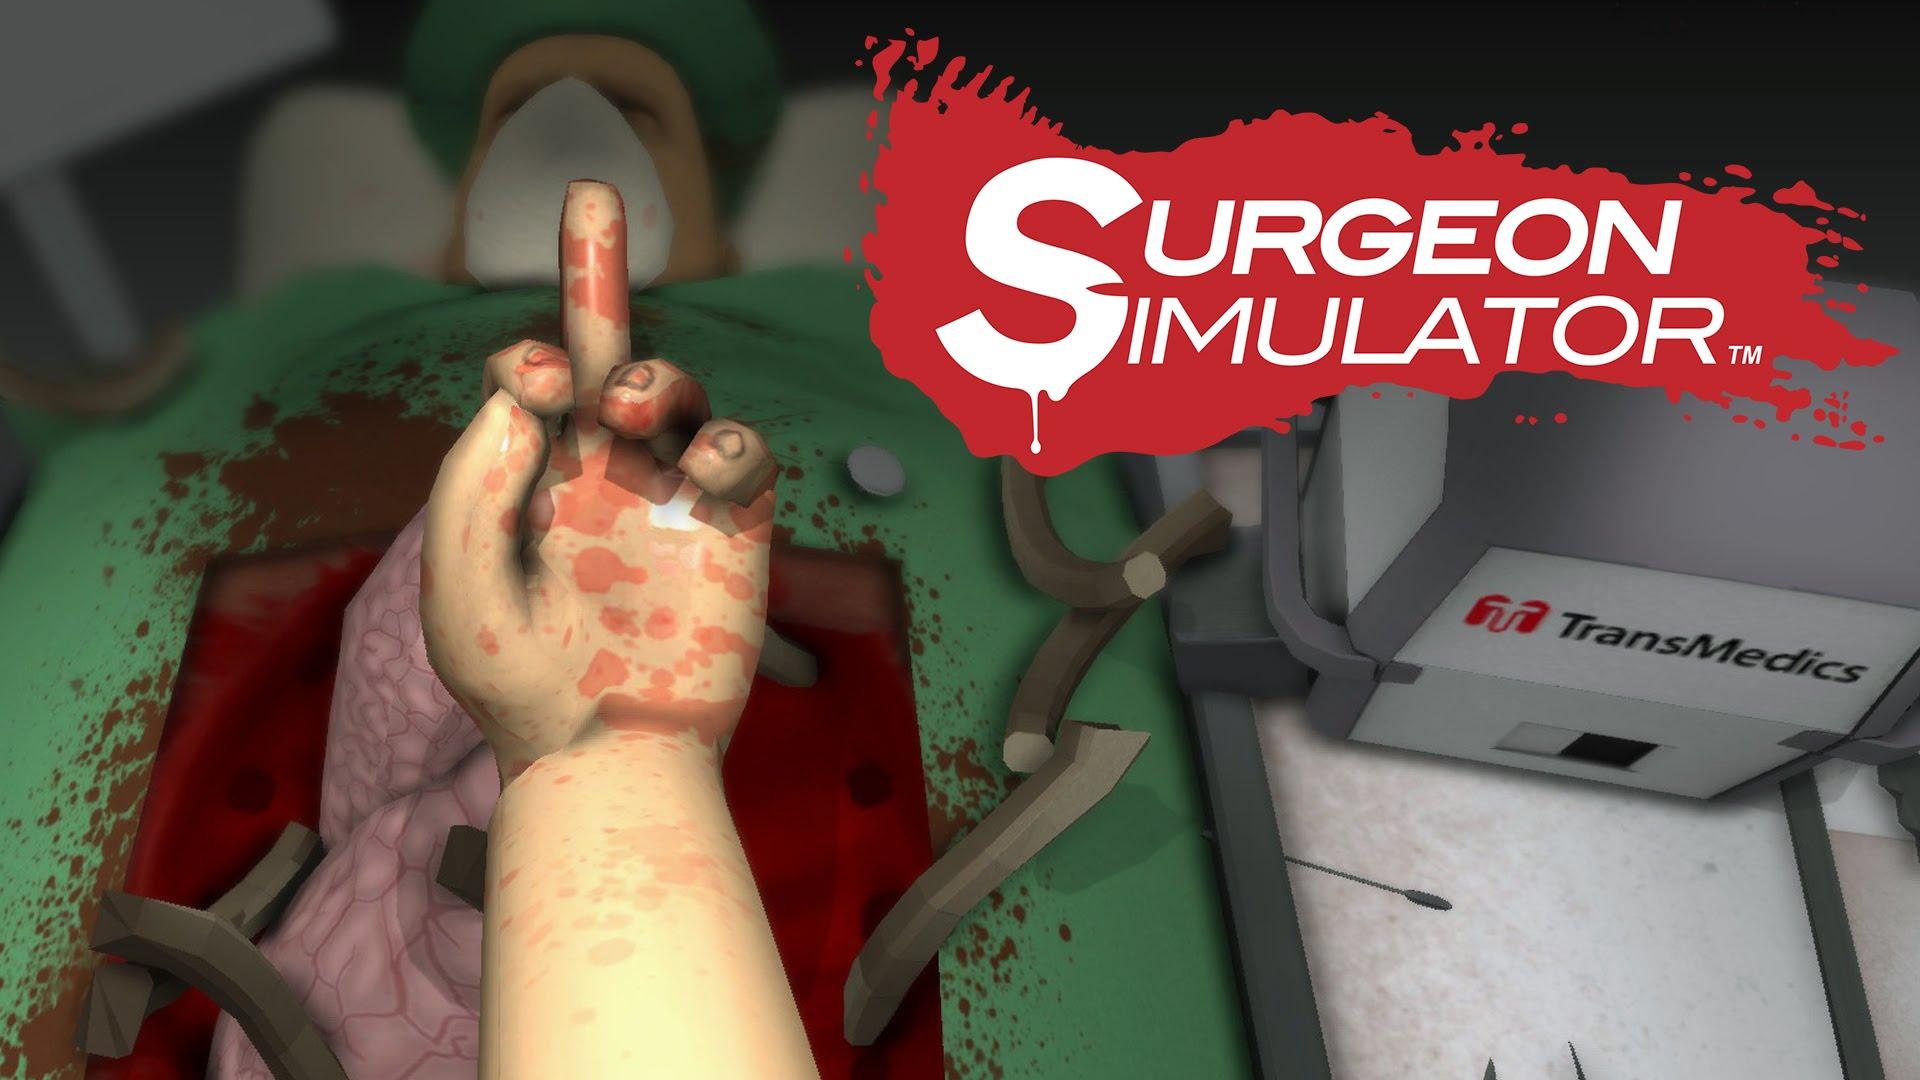 Real Surgeons Take on Surgeon Simulator in Hilarious Video